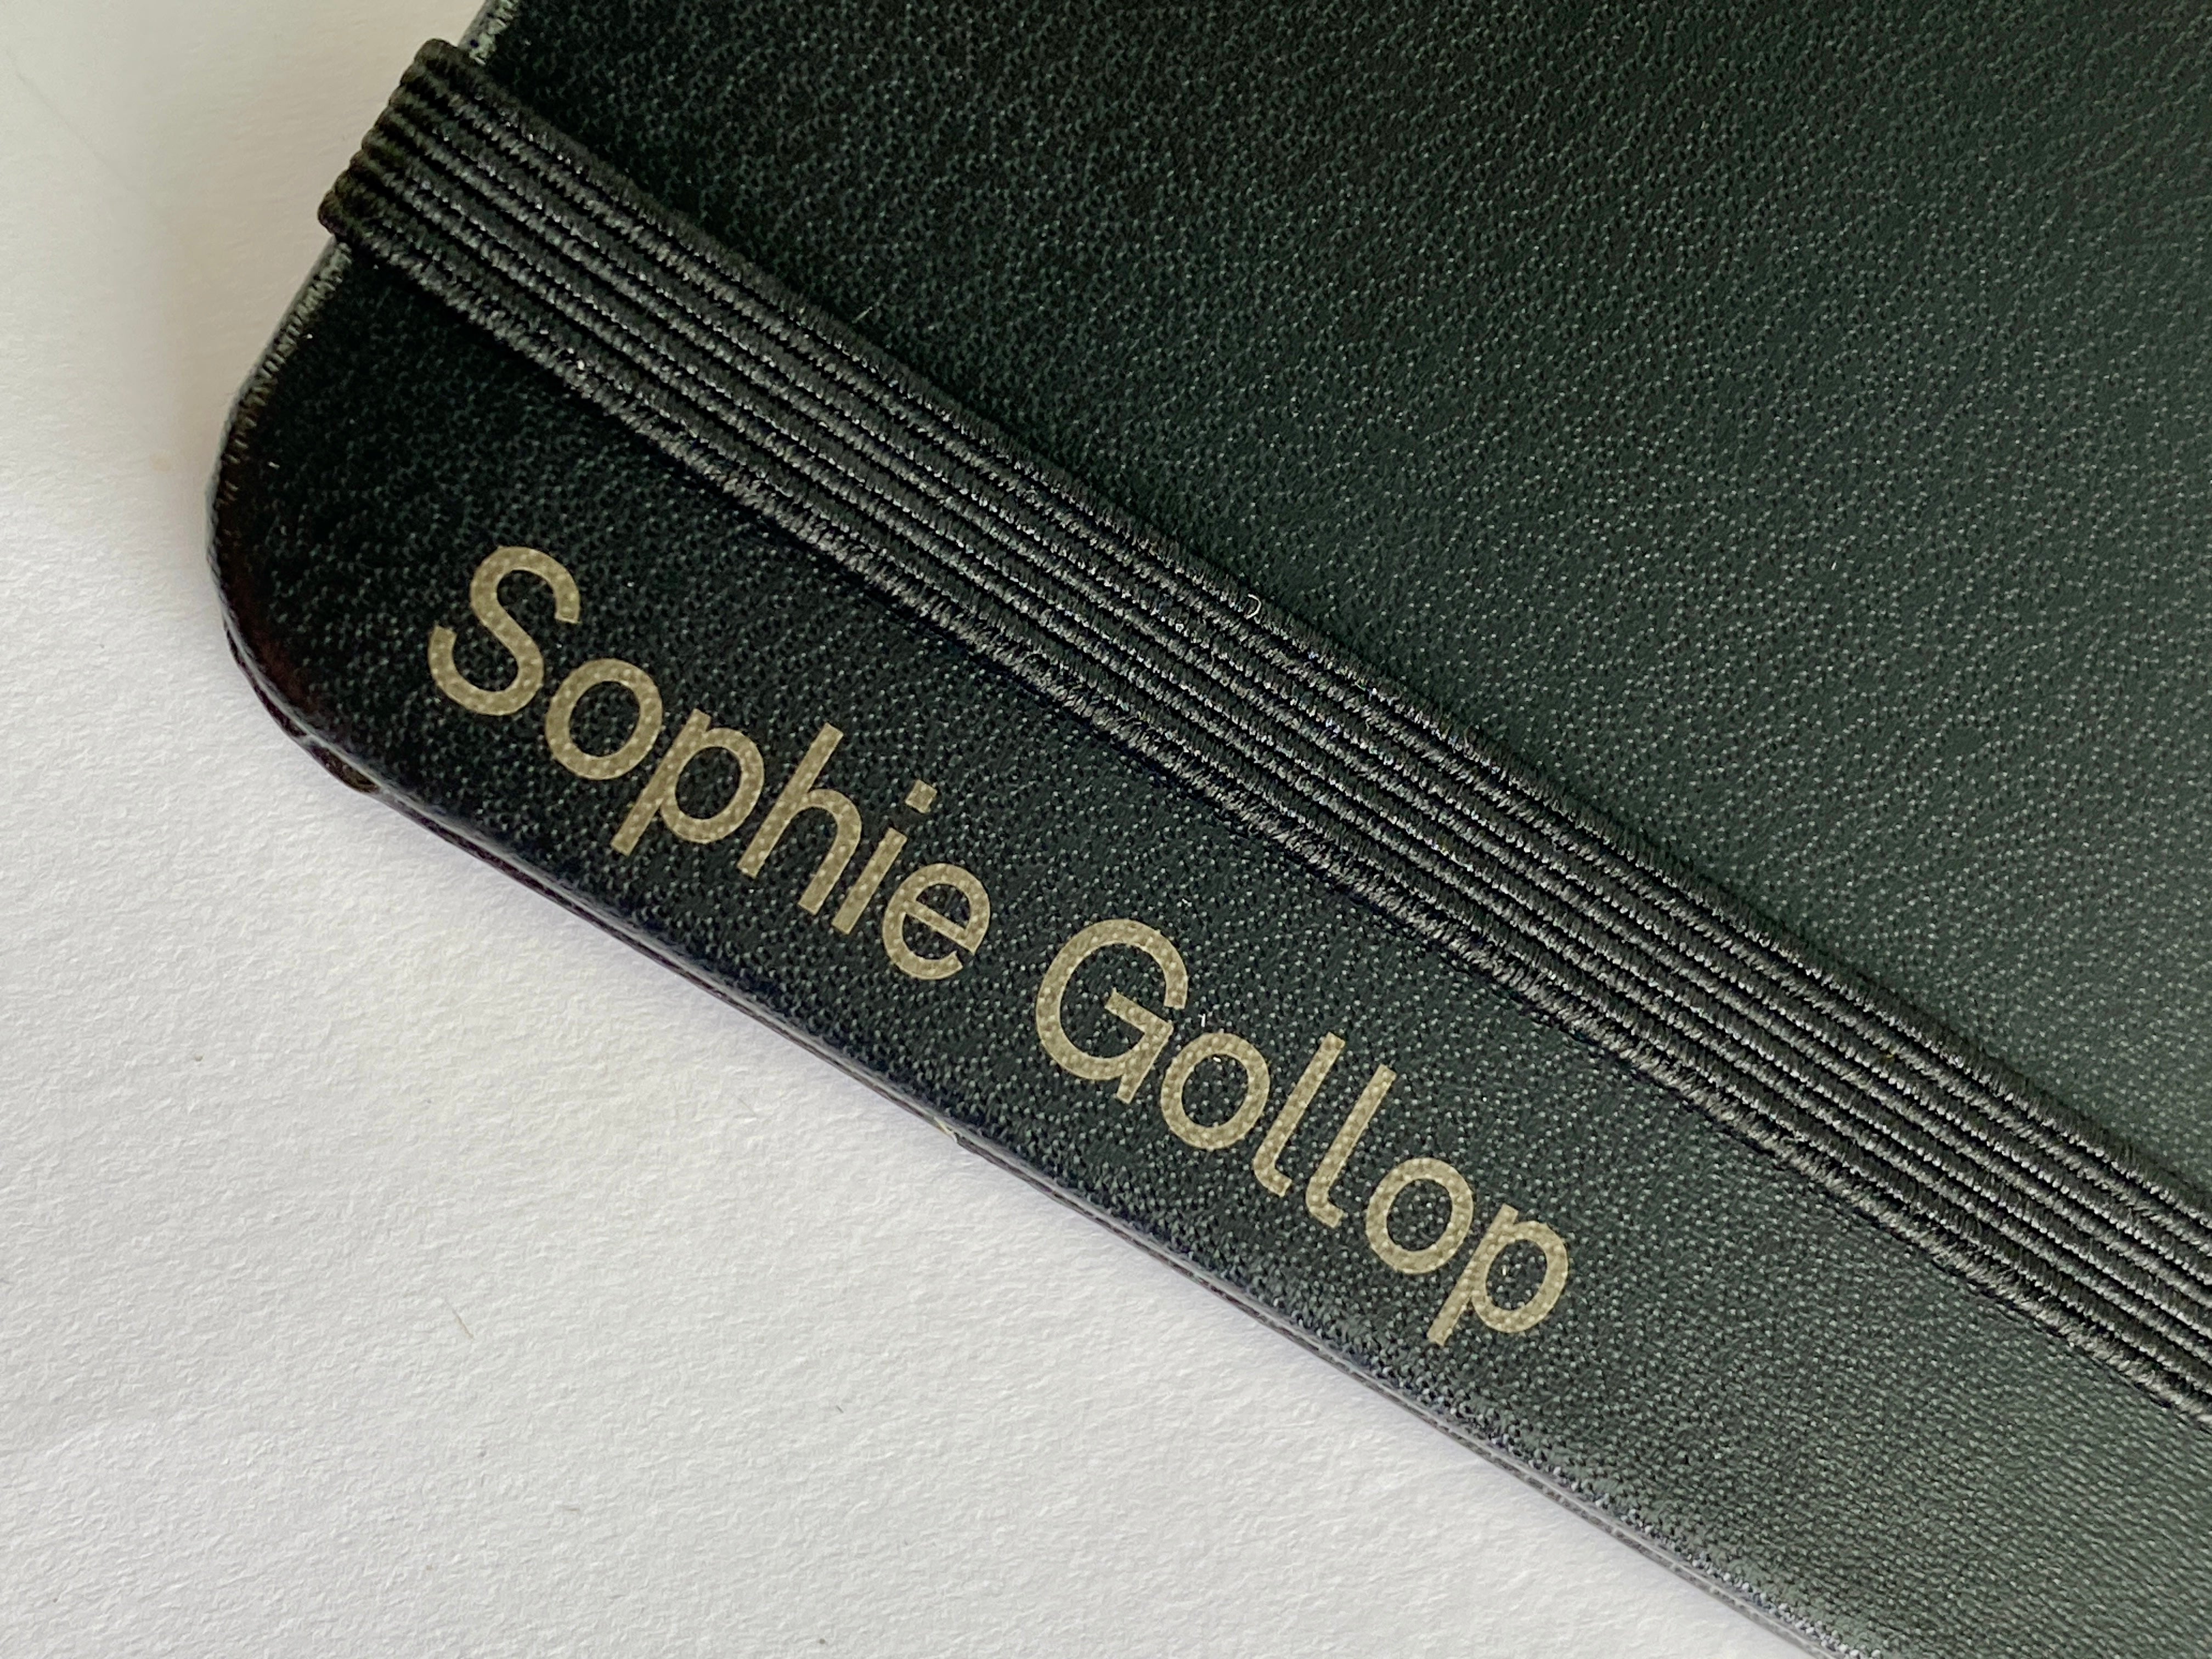 Personalised Notebook